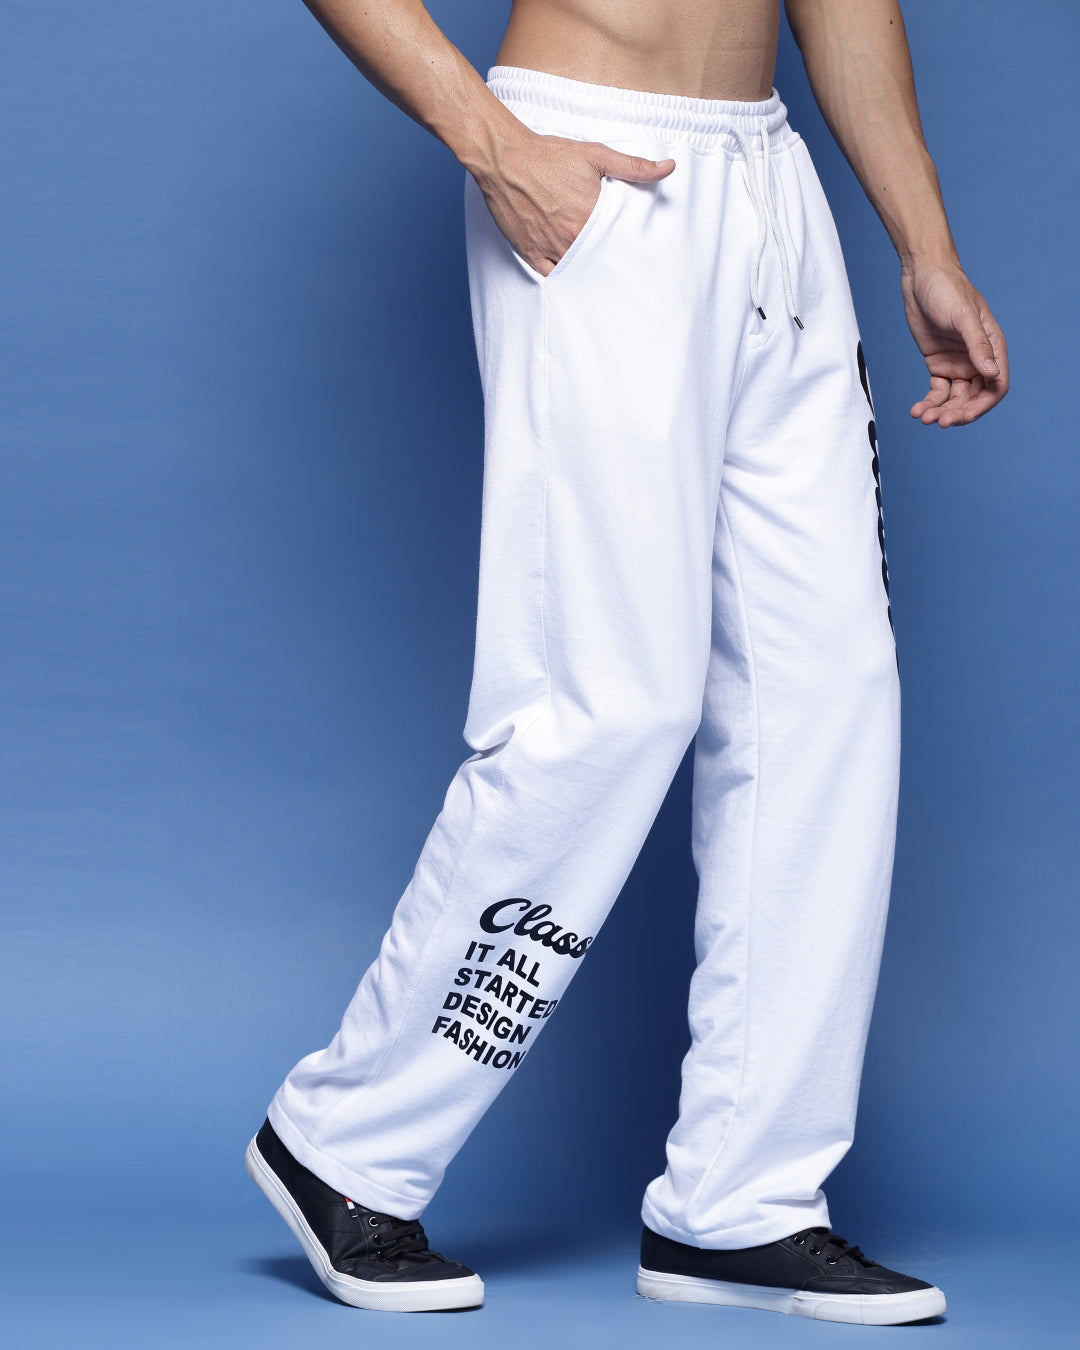 Buy Men White Solid Slim Fit Casual Track Pants Online - 809161 | Van Heusen